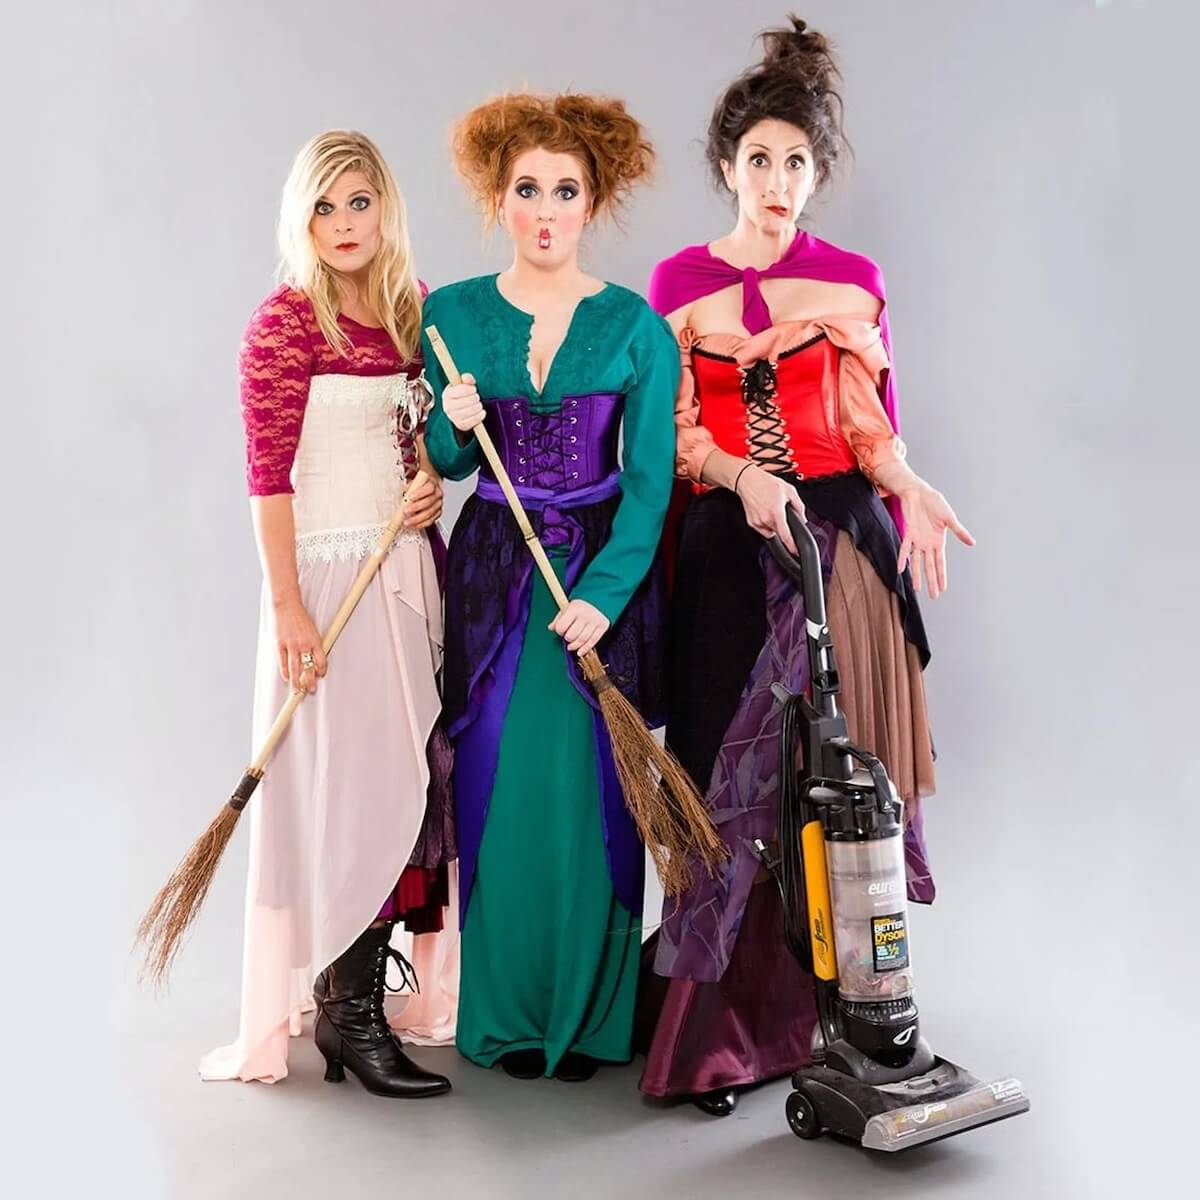 Hocus pocus costume for women